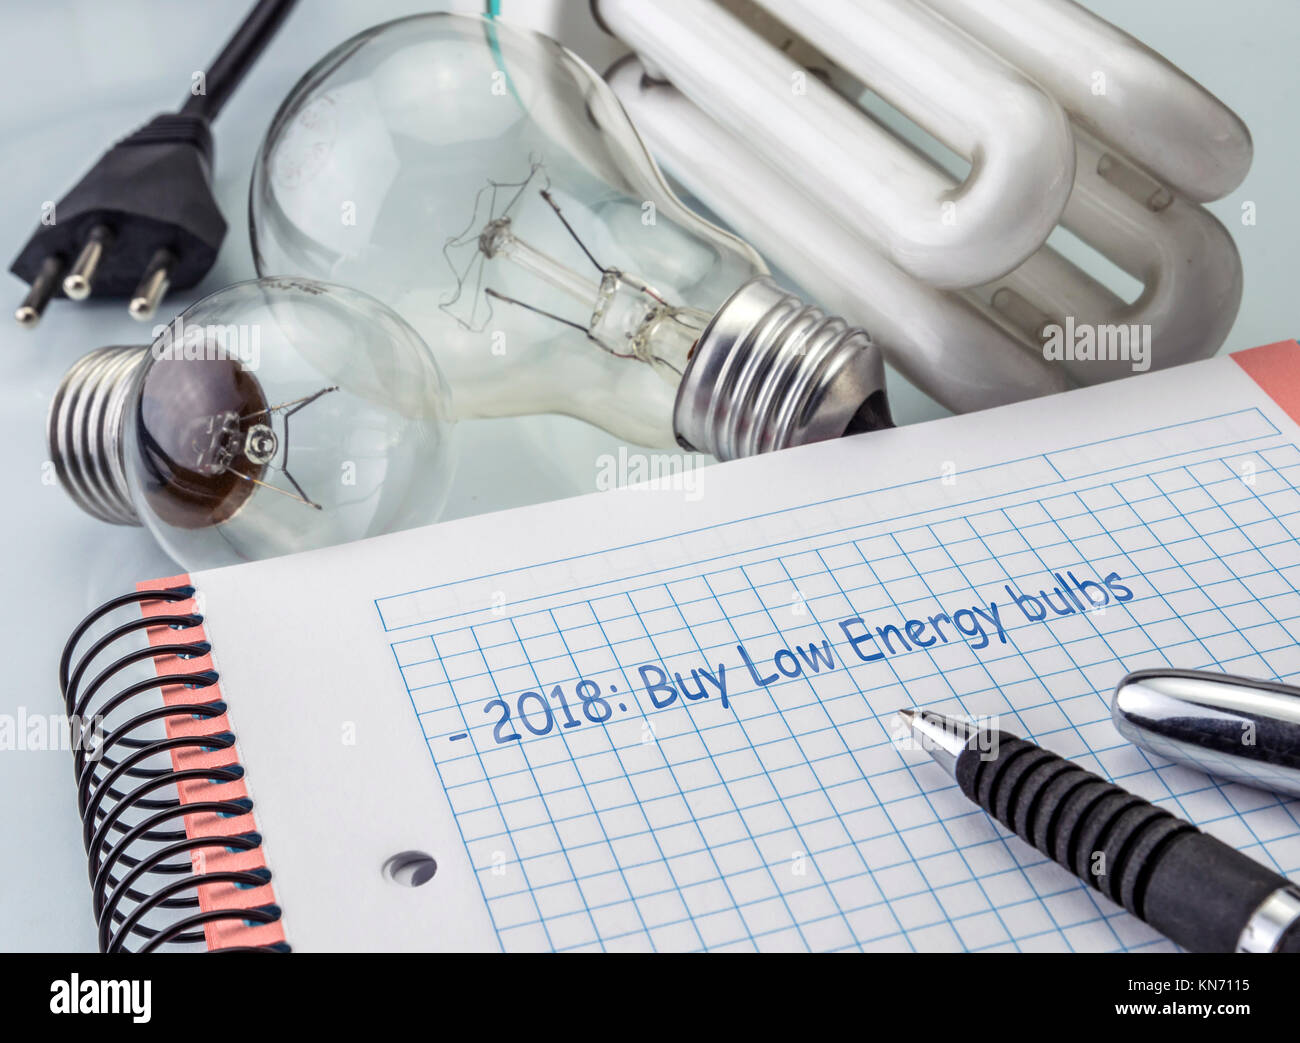 Taschenrechner und Geld neben einer Glühbirne, schreiben in der Agenda 2018 die Glühlampen der niedrige Verbrauch kaufen, das Konzept der Energieeinsparung Stockfoto